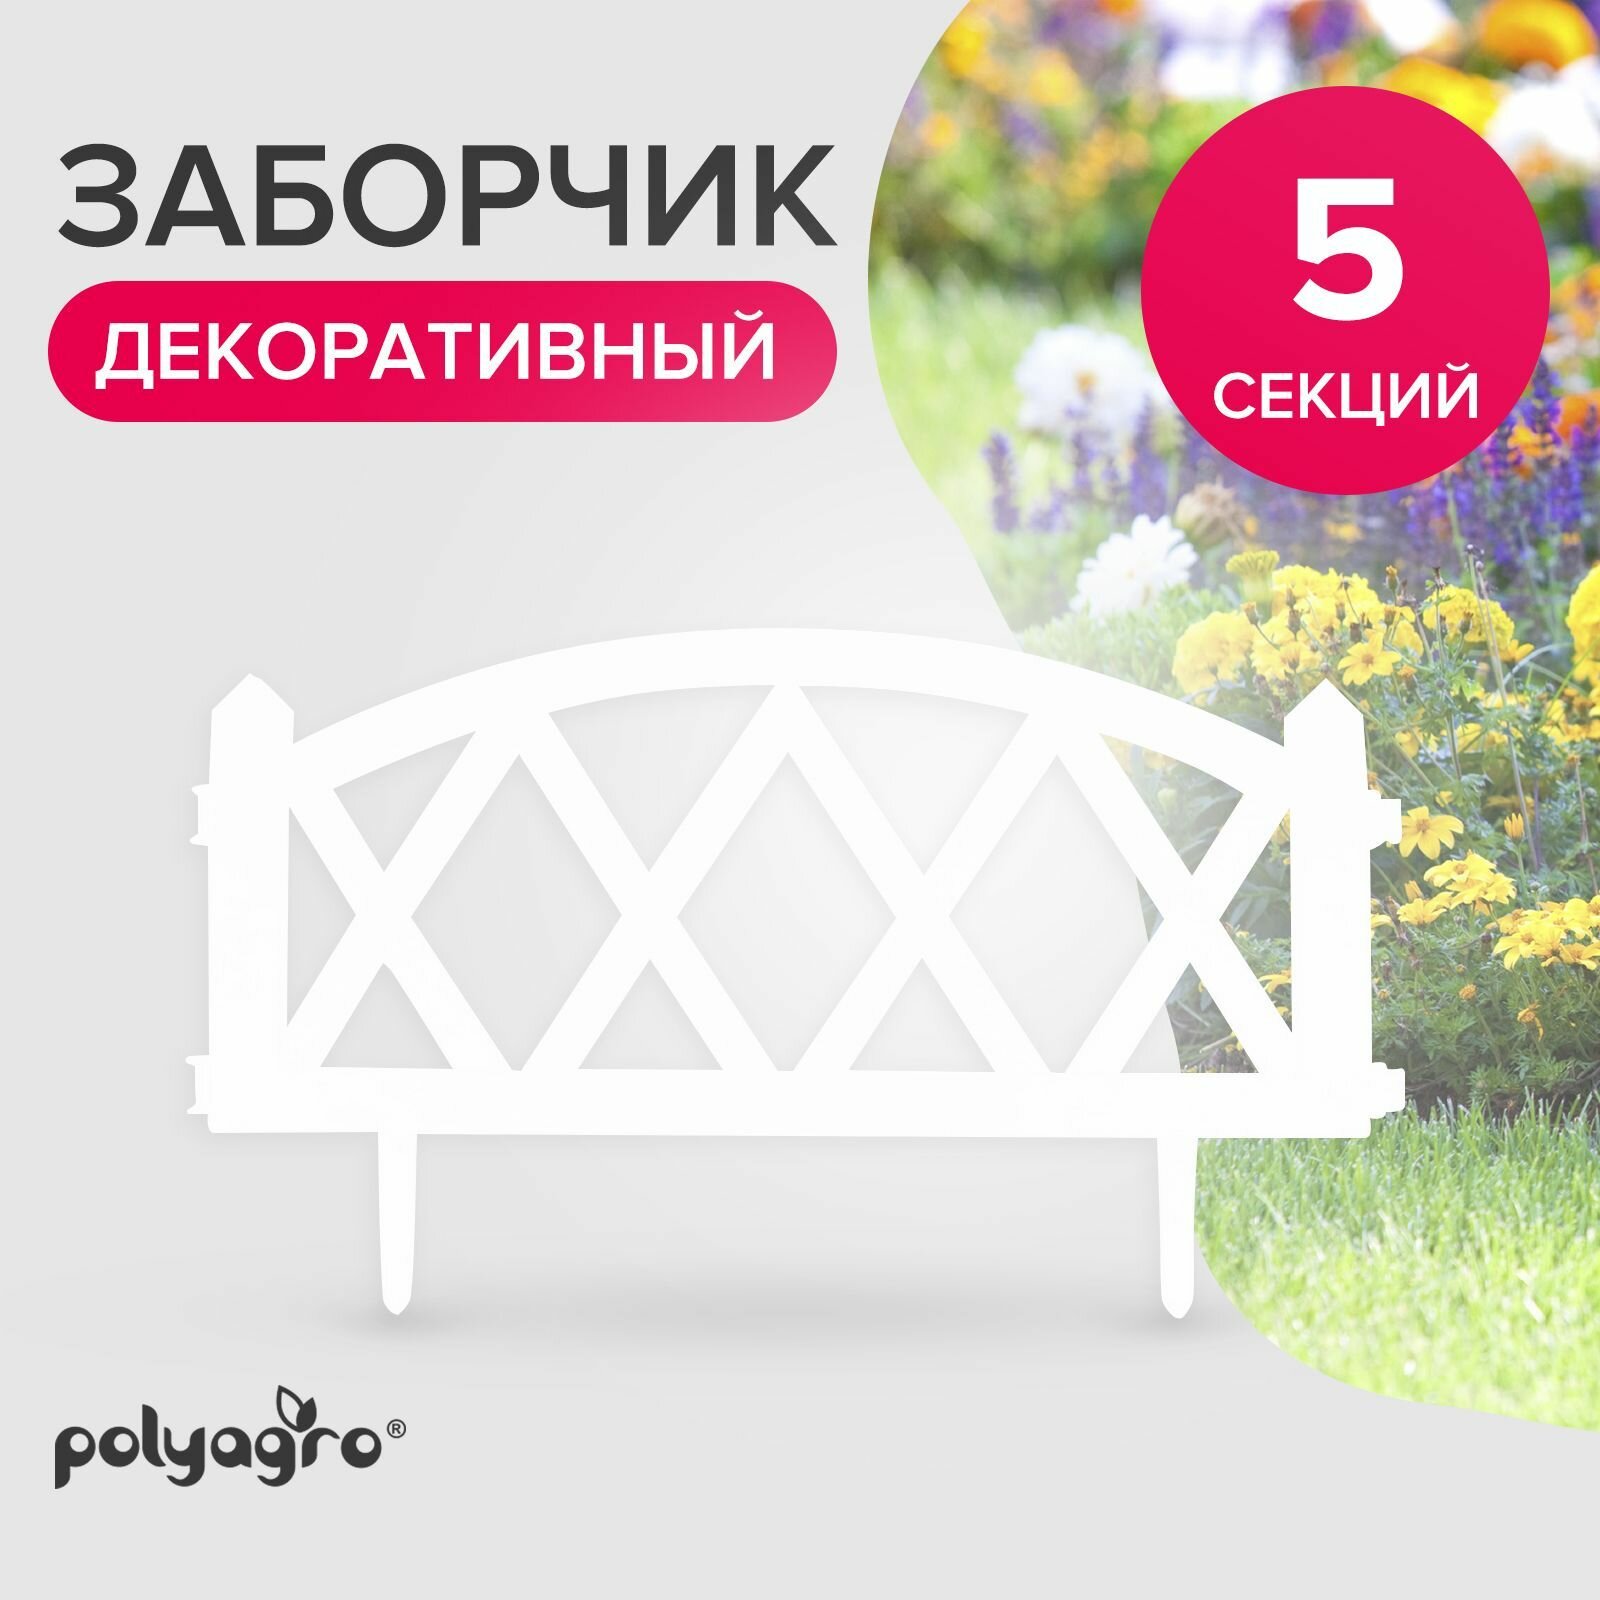 Заборчик декоративный для сада 300 м (высота 35 см) бордюр садовый Polyagro Модерн белый